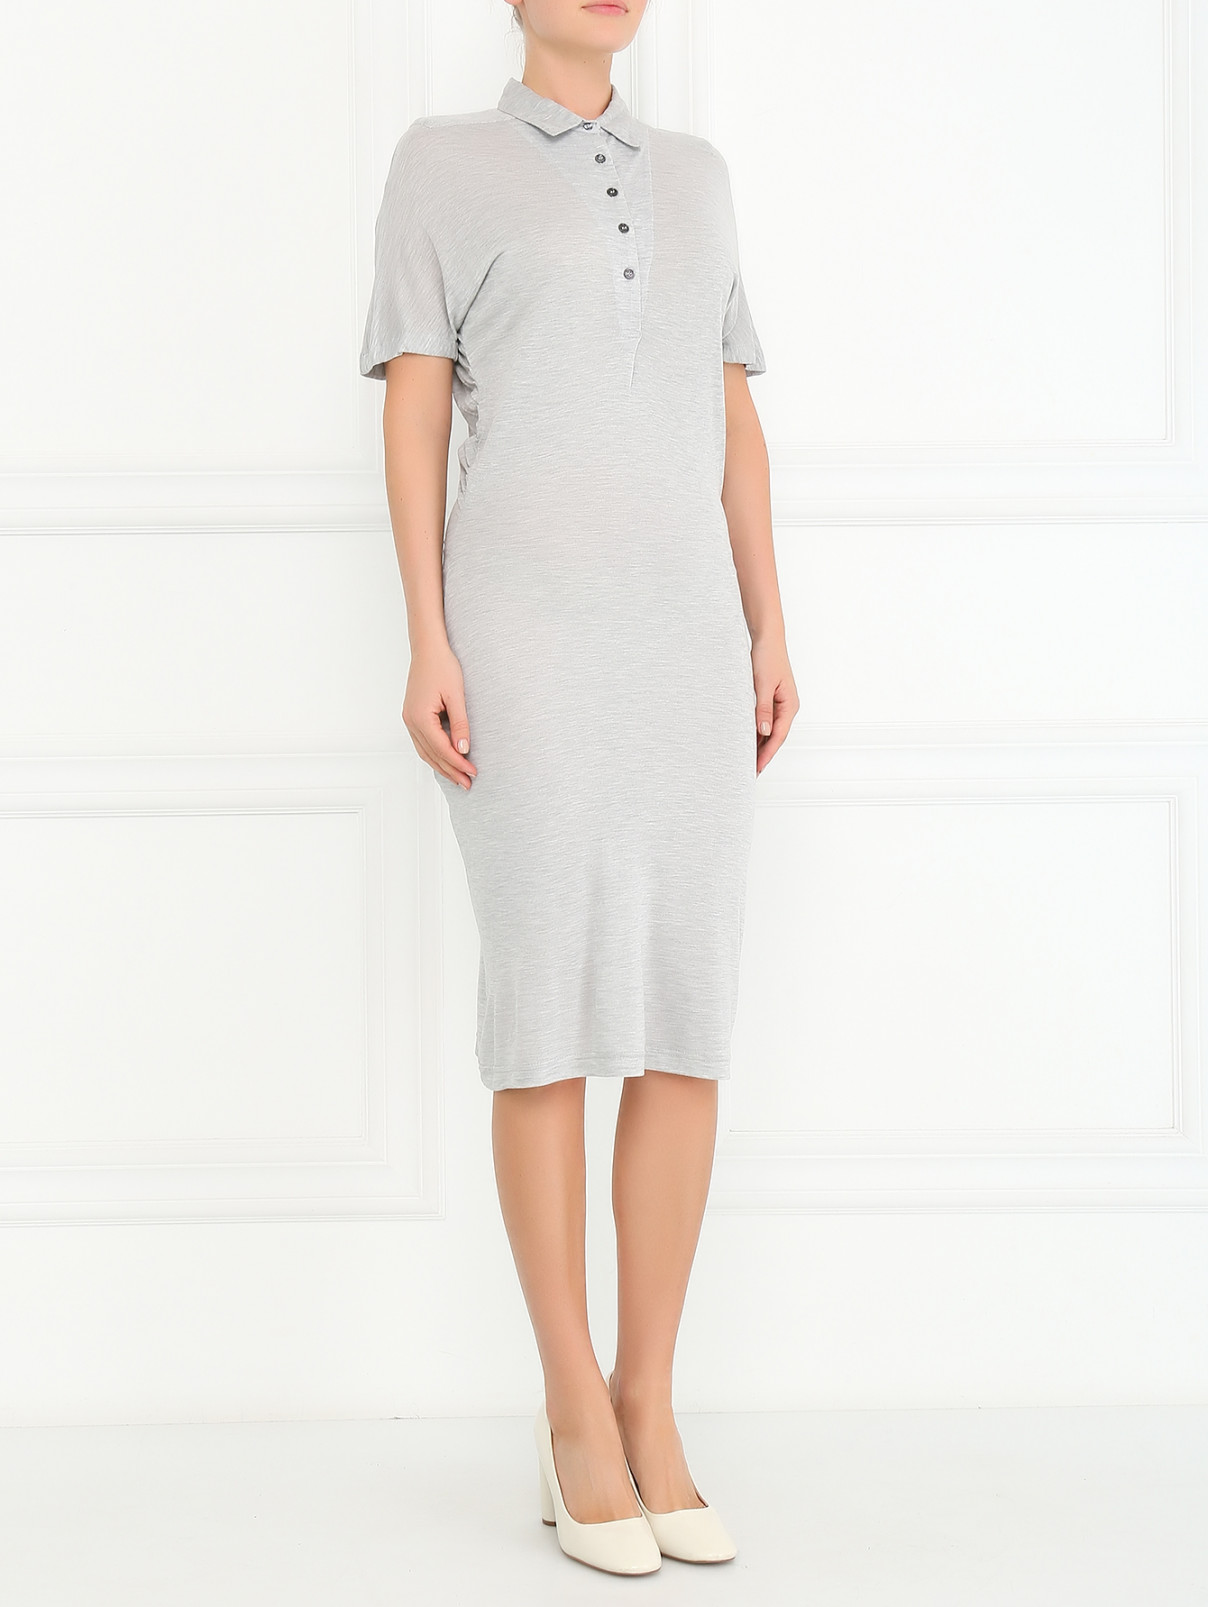 Платье-рубашка с драпировкой Paul Smith  –  Модель Общий вид  – Цвет:  Серый